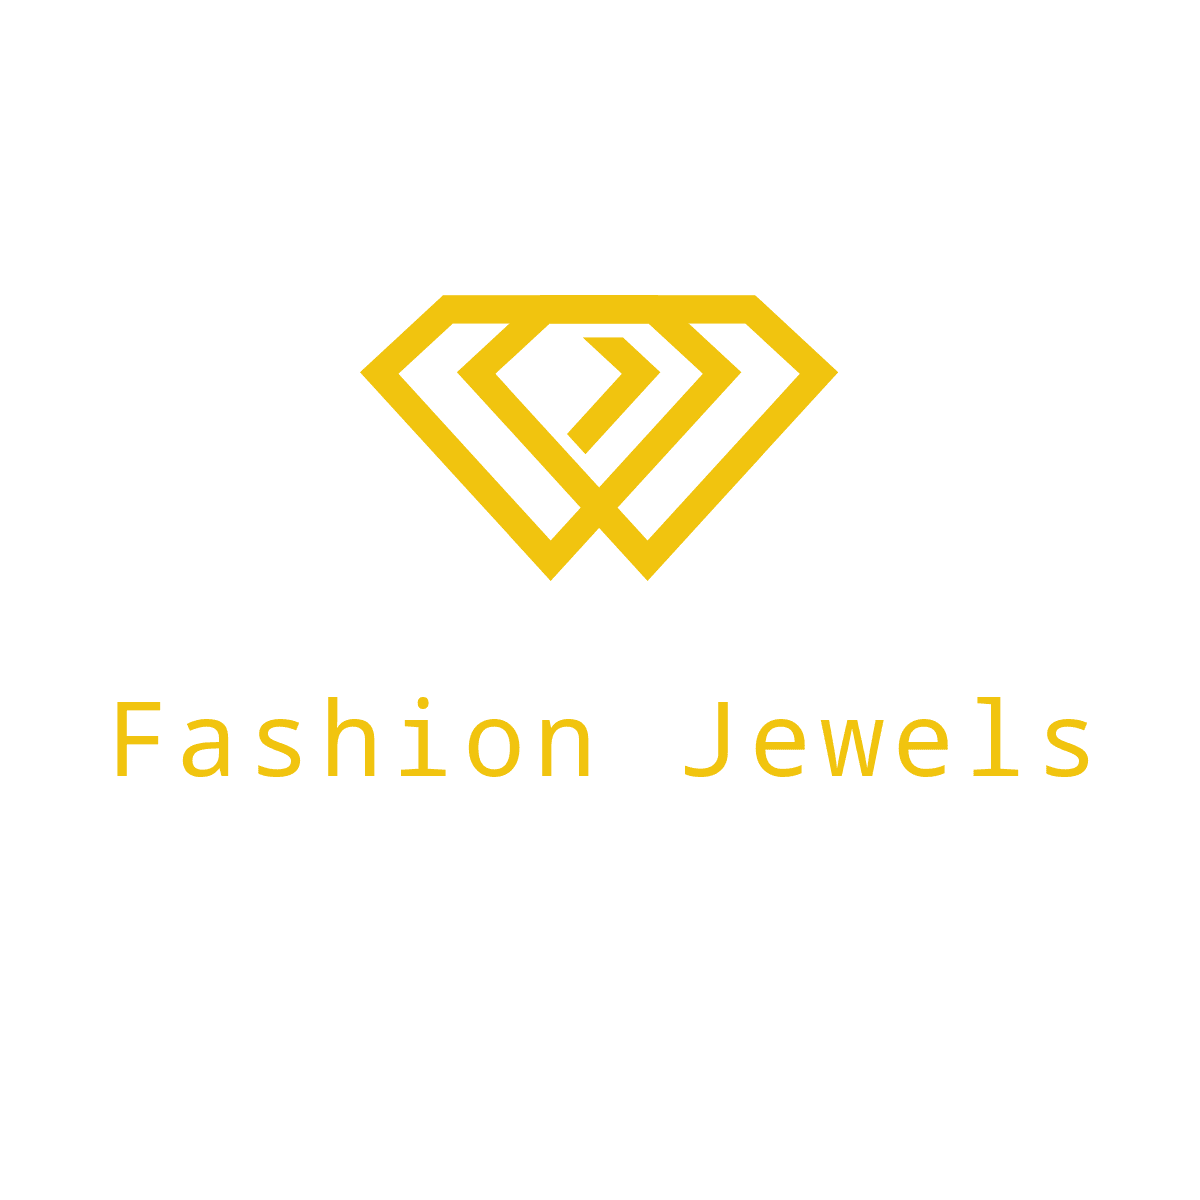 Fashion Jewels